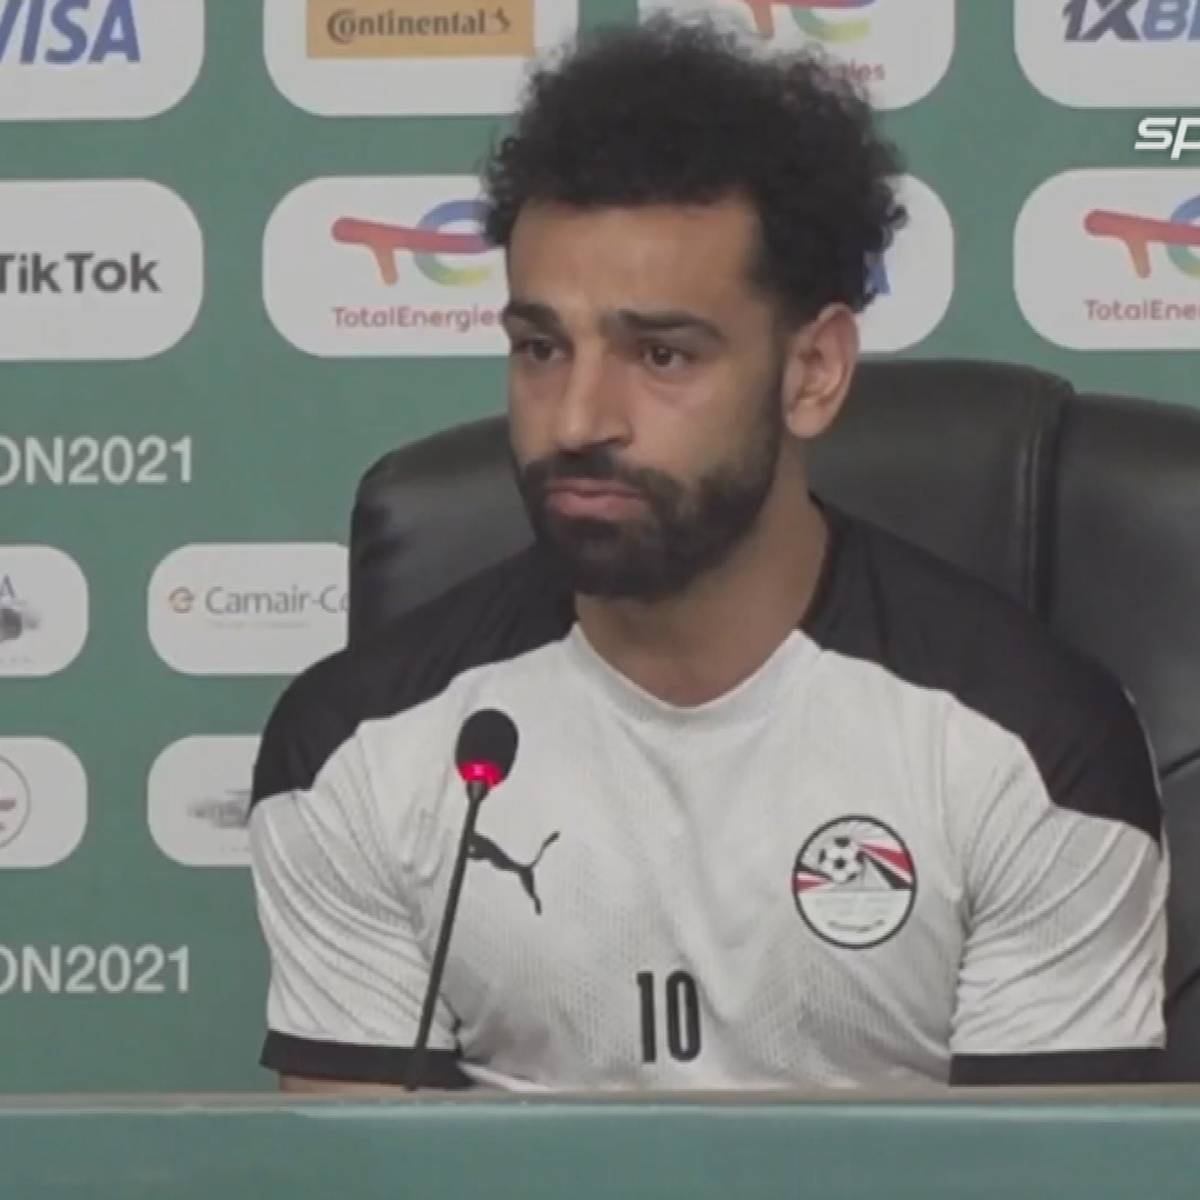 Salah-Kritik: "Fans sind nicht mehr hinter uns!"